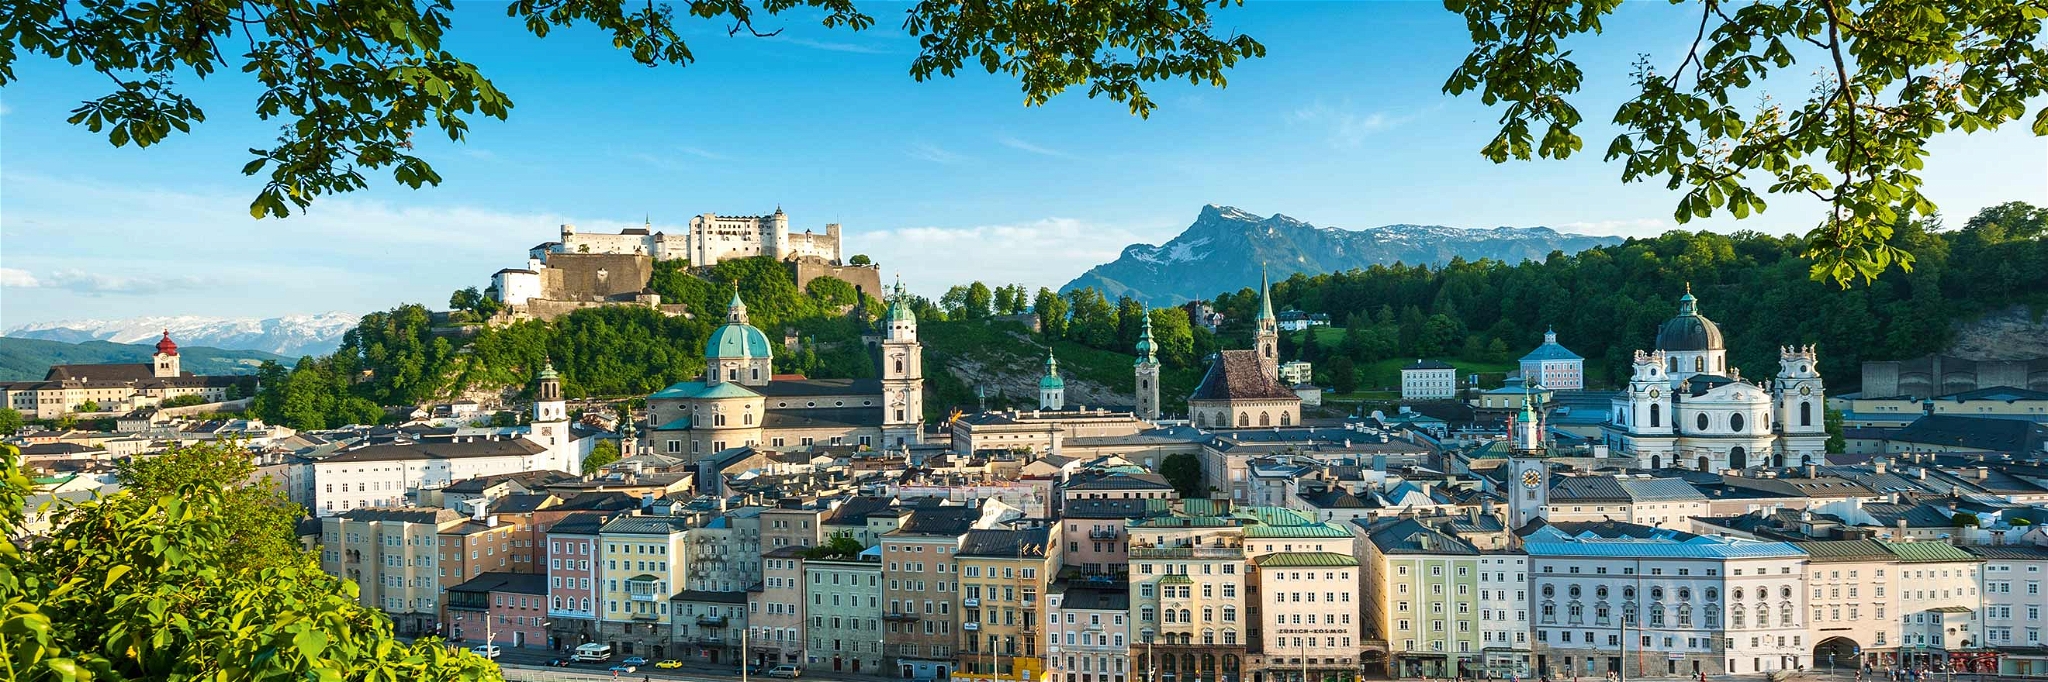 Traumblick. Vom Kapuzinerberg schaut man auf die schöne Stadt und hinein ins herrliche SalzburgerLand.